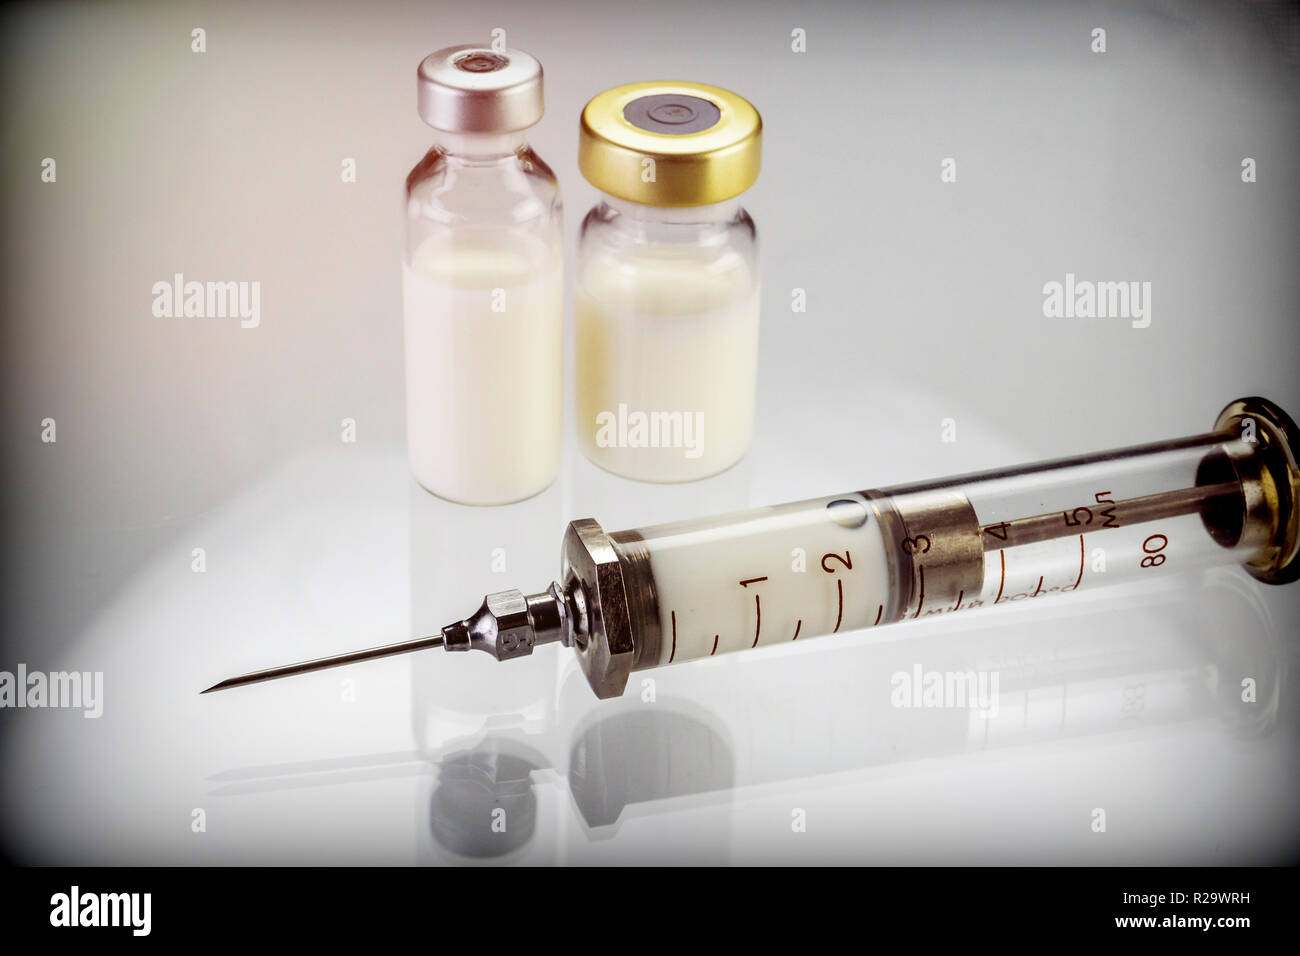 Siringa vintage accanto a due flaconi con la medicina isolati su sfondo bianco, immagine concettuale Foto Stock